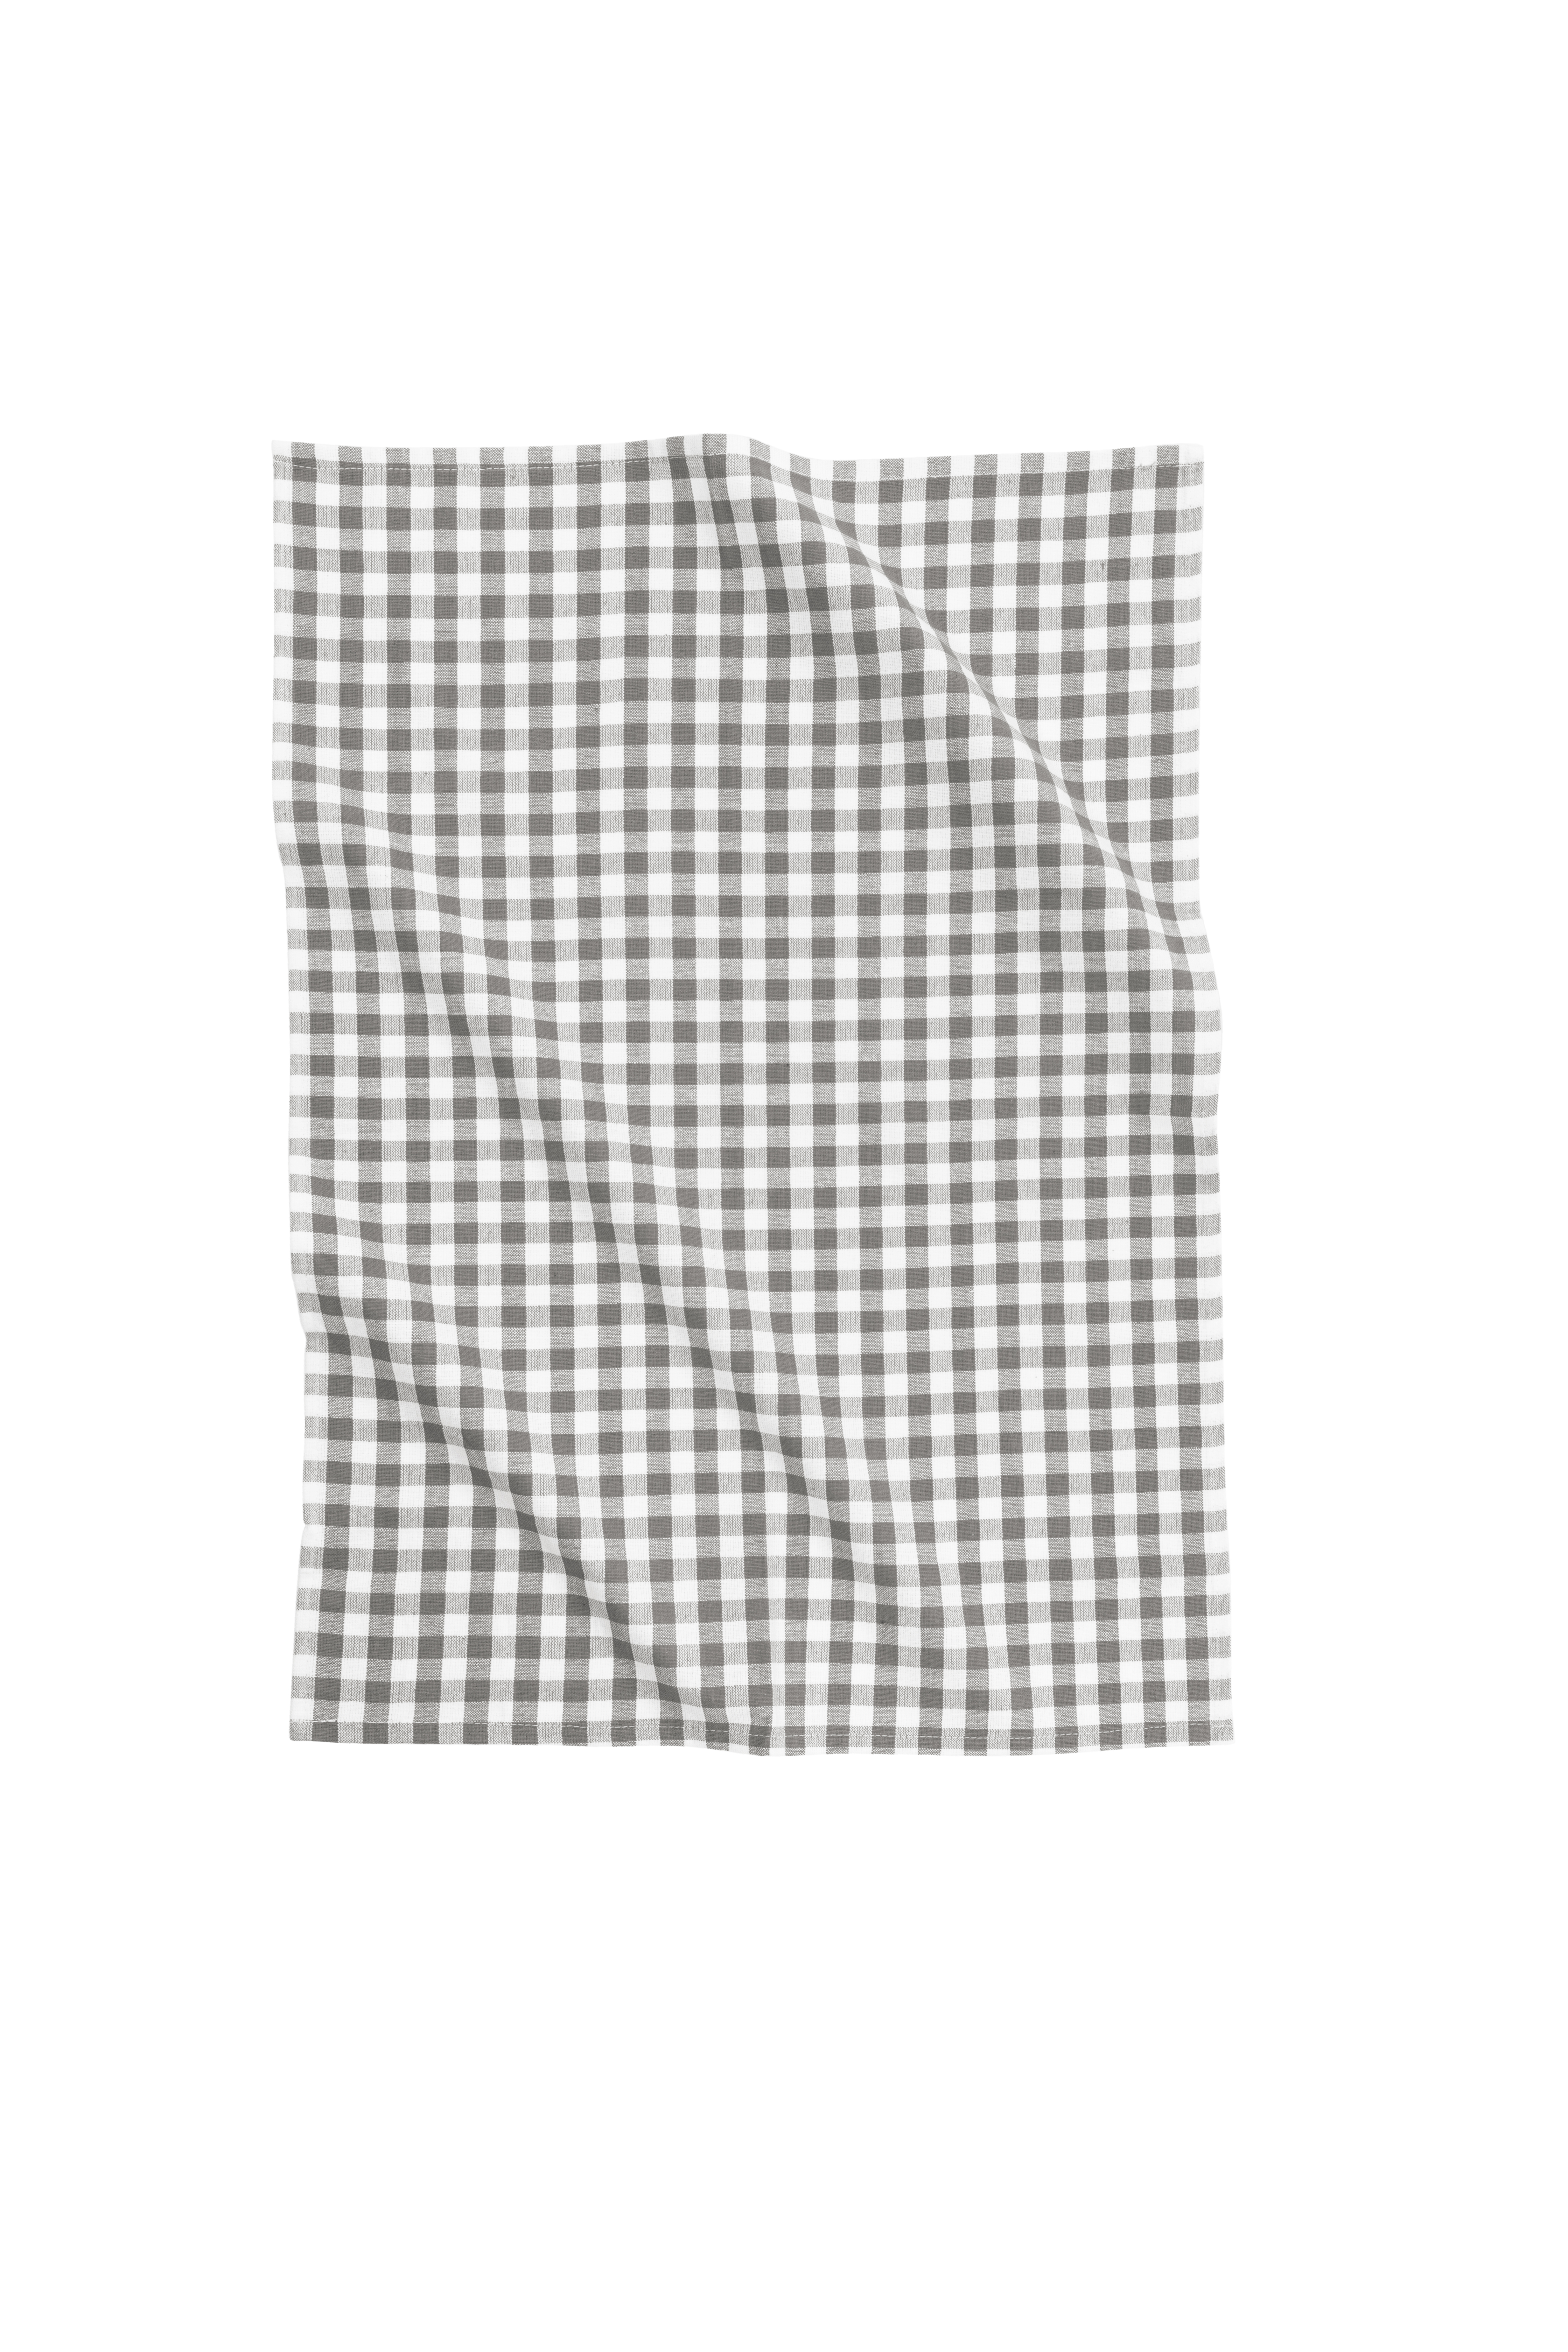 Keukenhanddoek XL-LINES set/3 (stripe/waffle/check), grijs